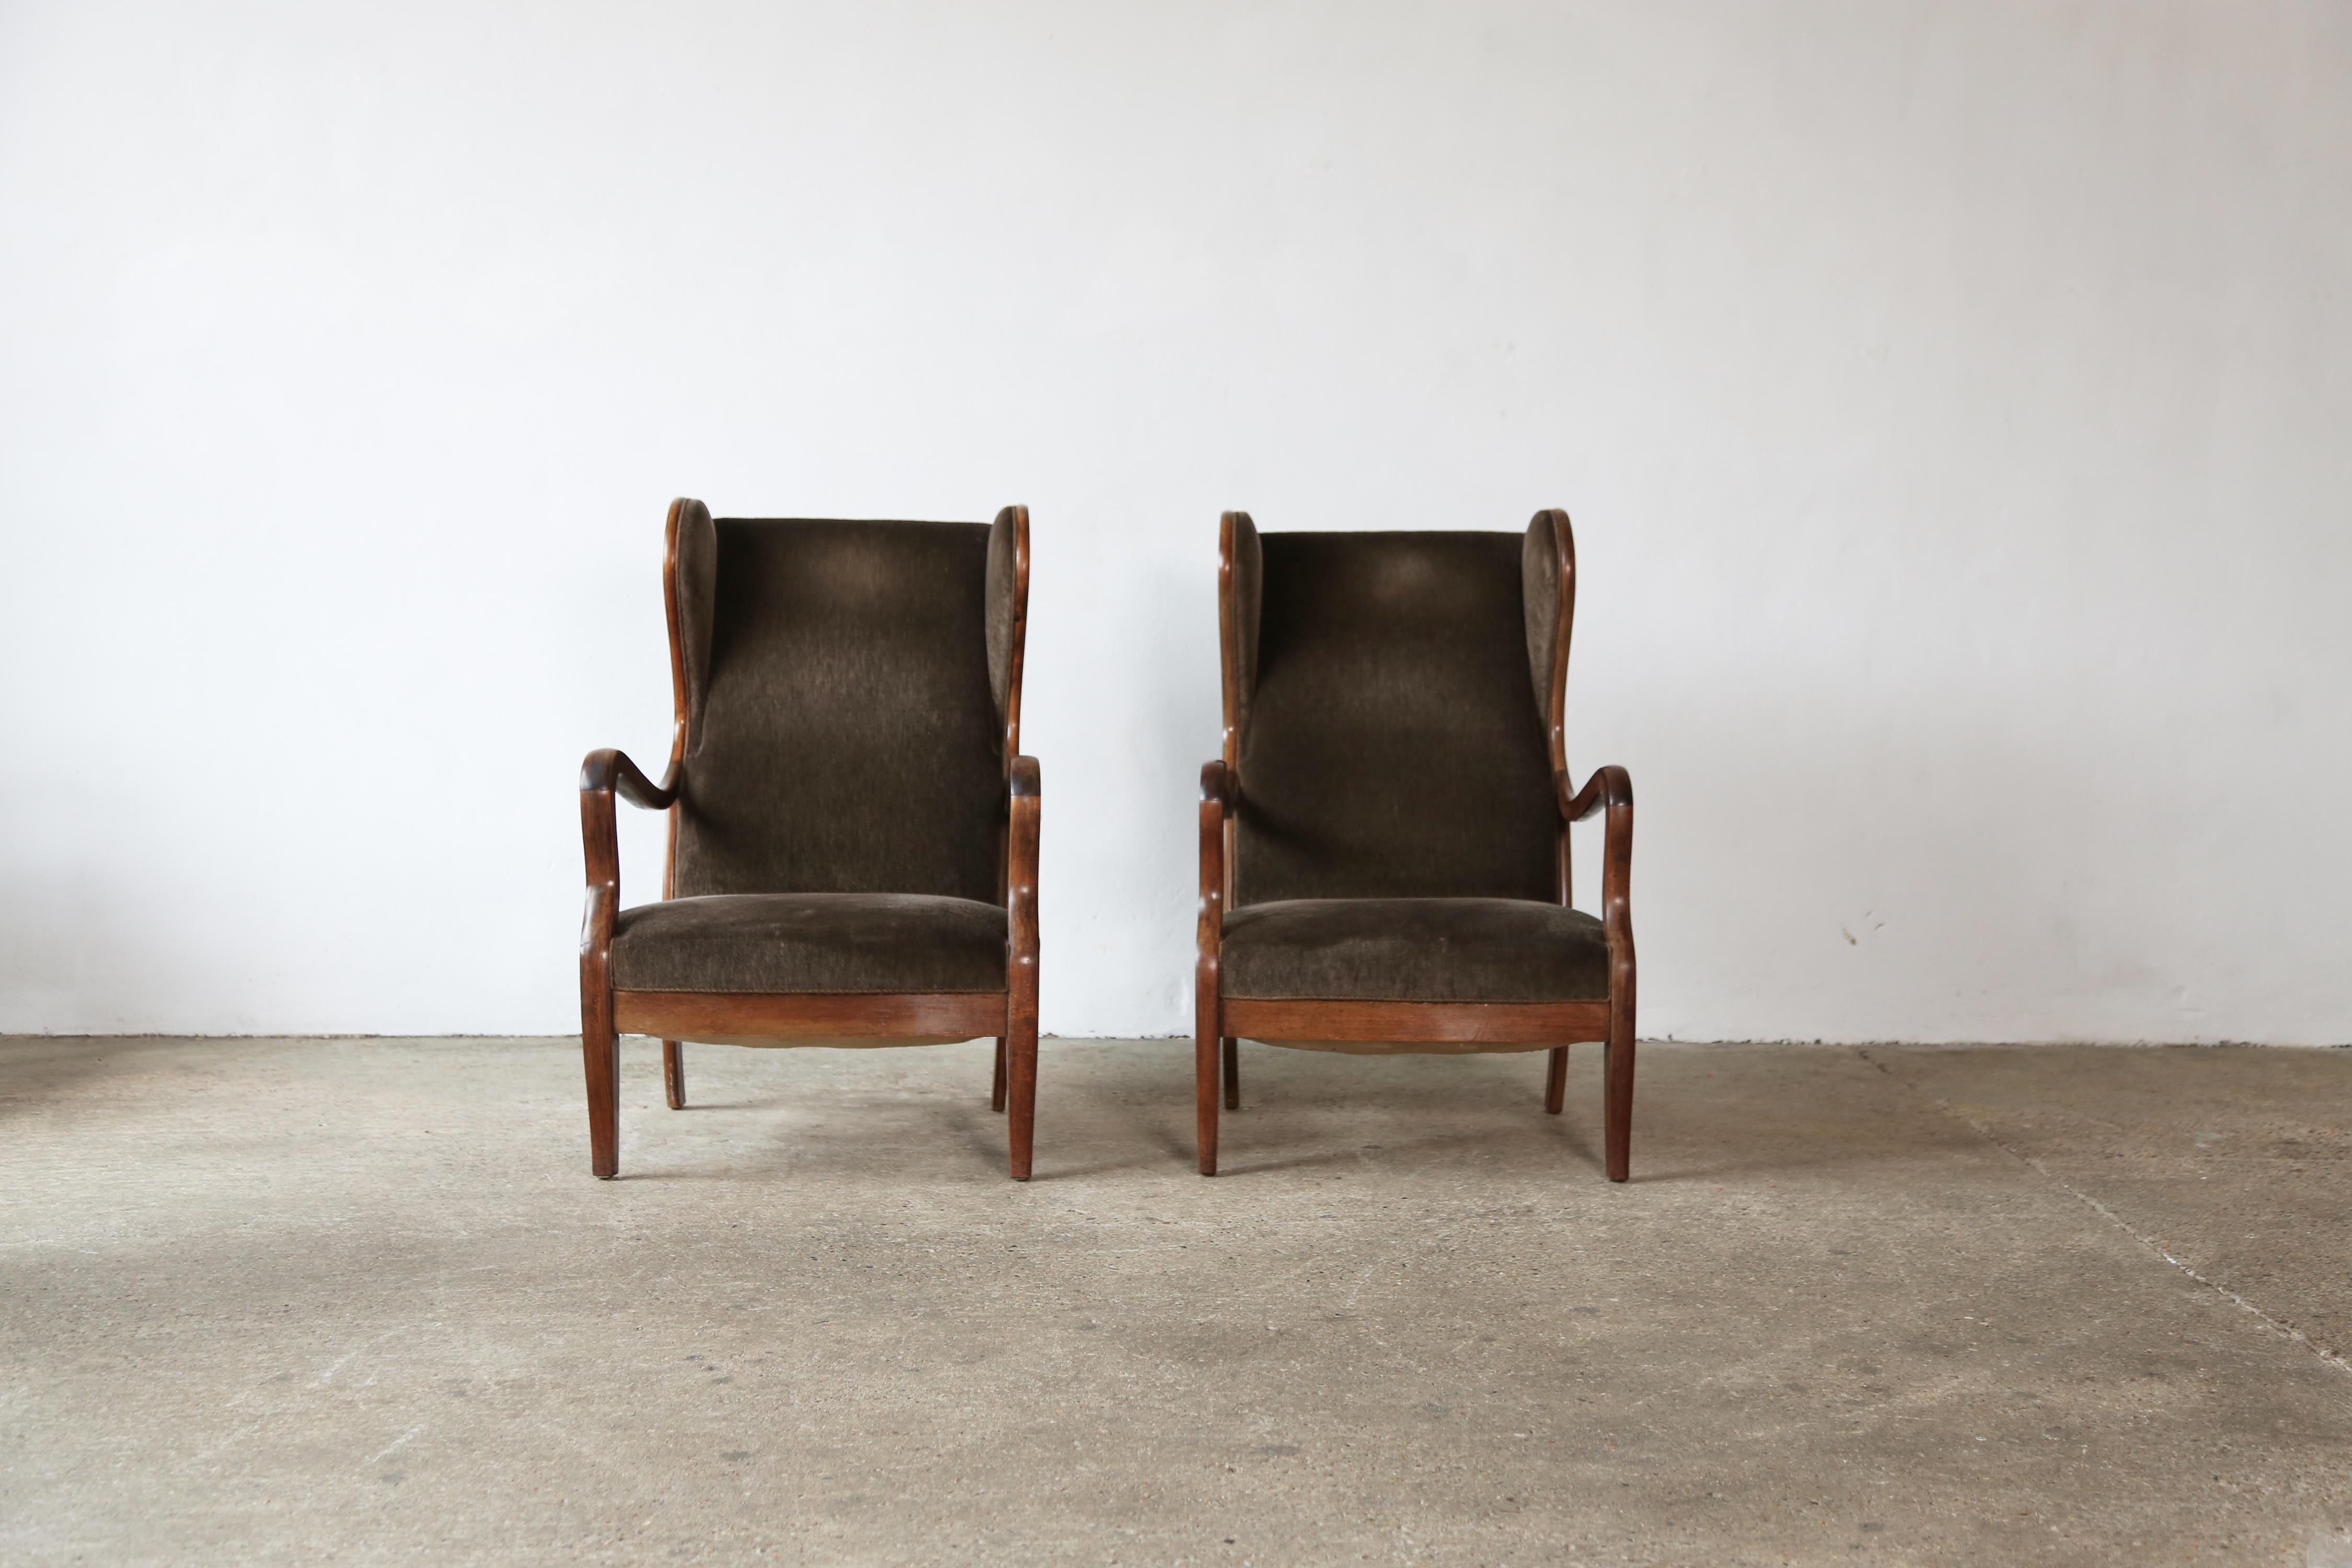 Frits Henningsen Chairs, Denmark, 1940s For Sale 2